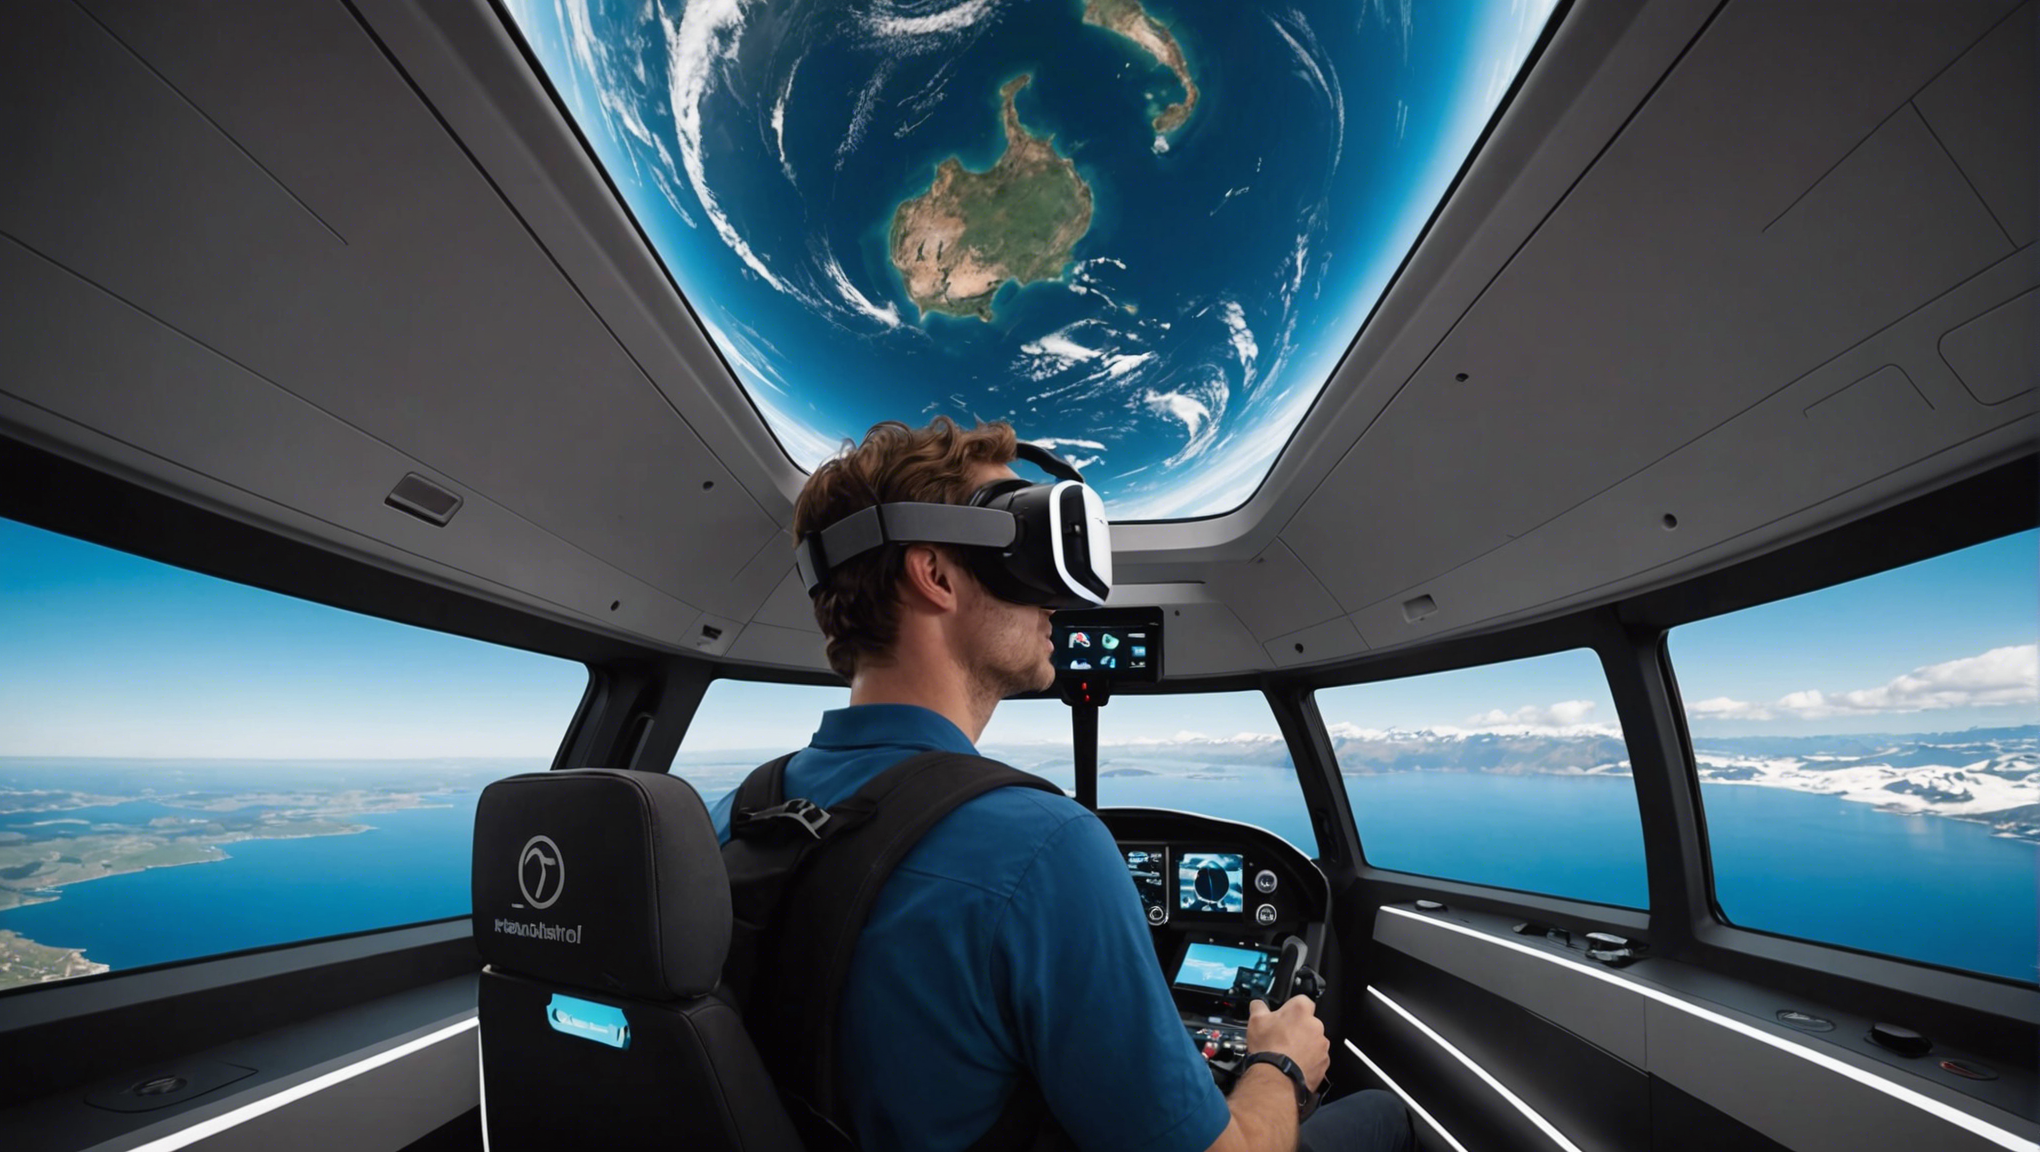 découvrez l'expérience immersive d'un voyage spatial en réalité virtuelle et plongez dans une aventure hors du commun.